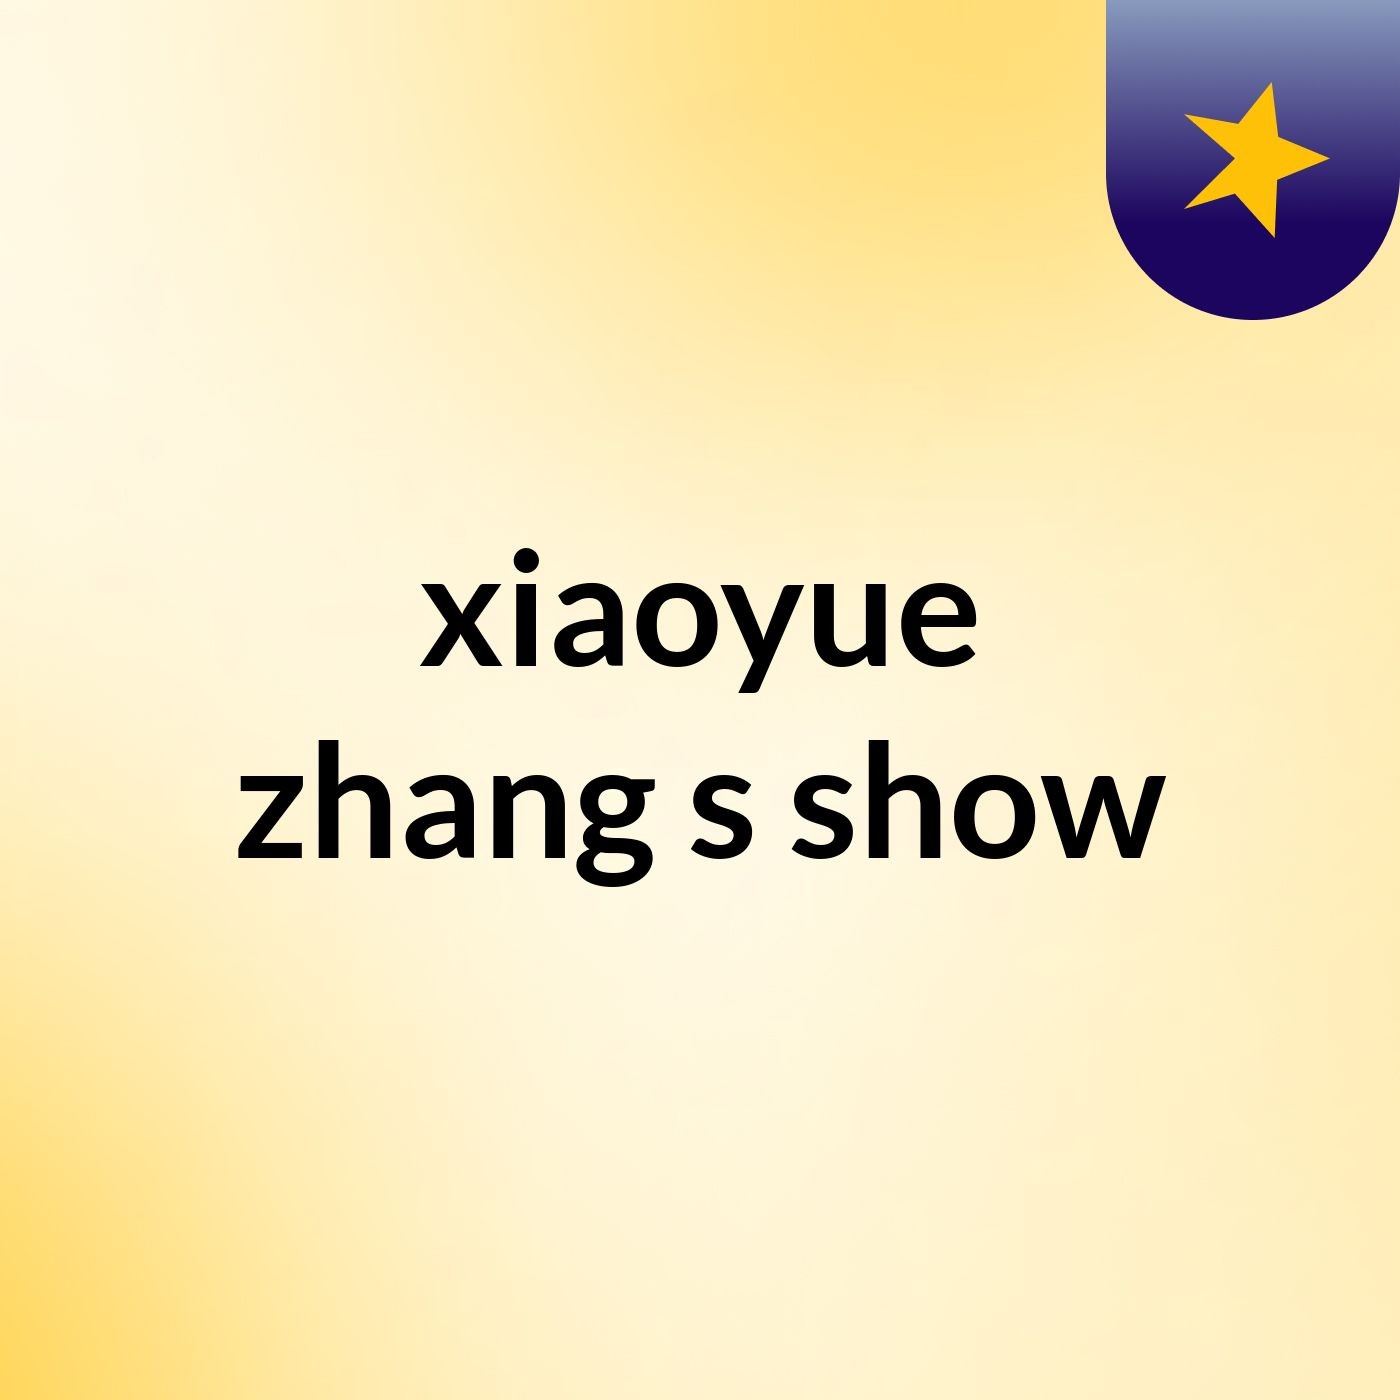 Episode 6 - xiaoyue zhang's show